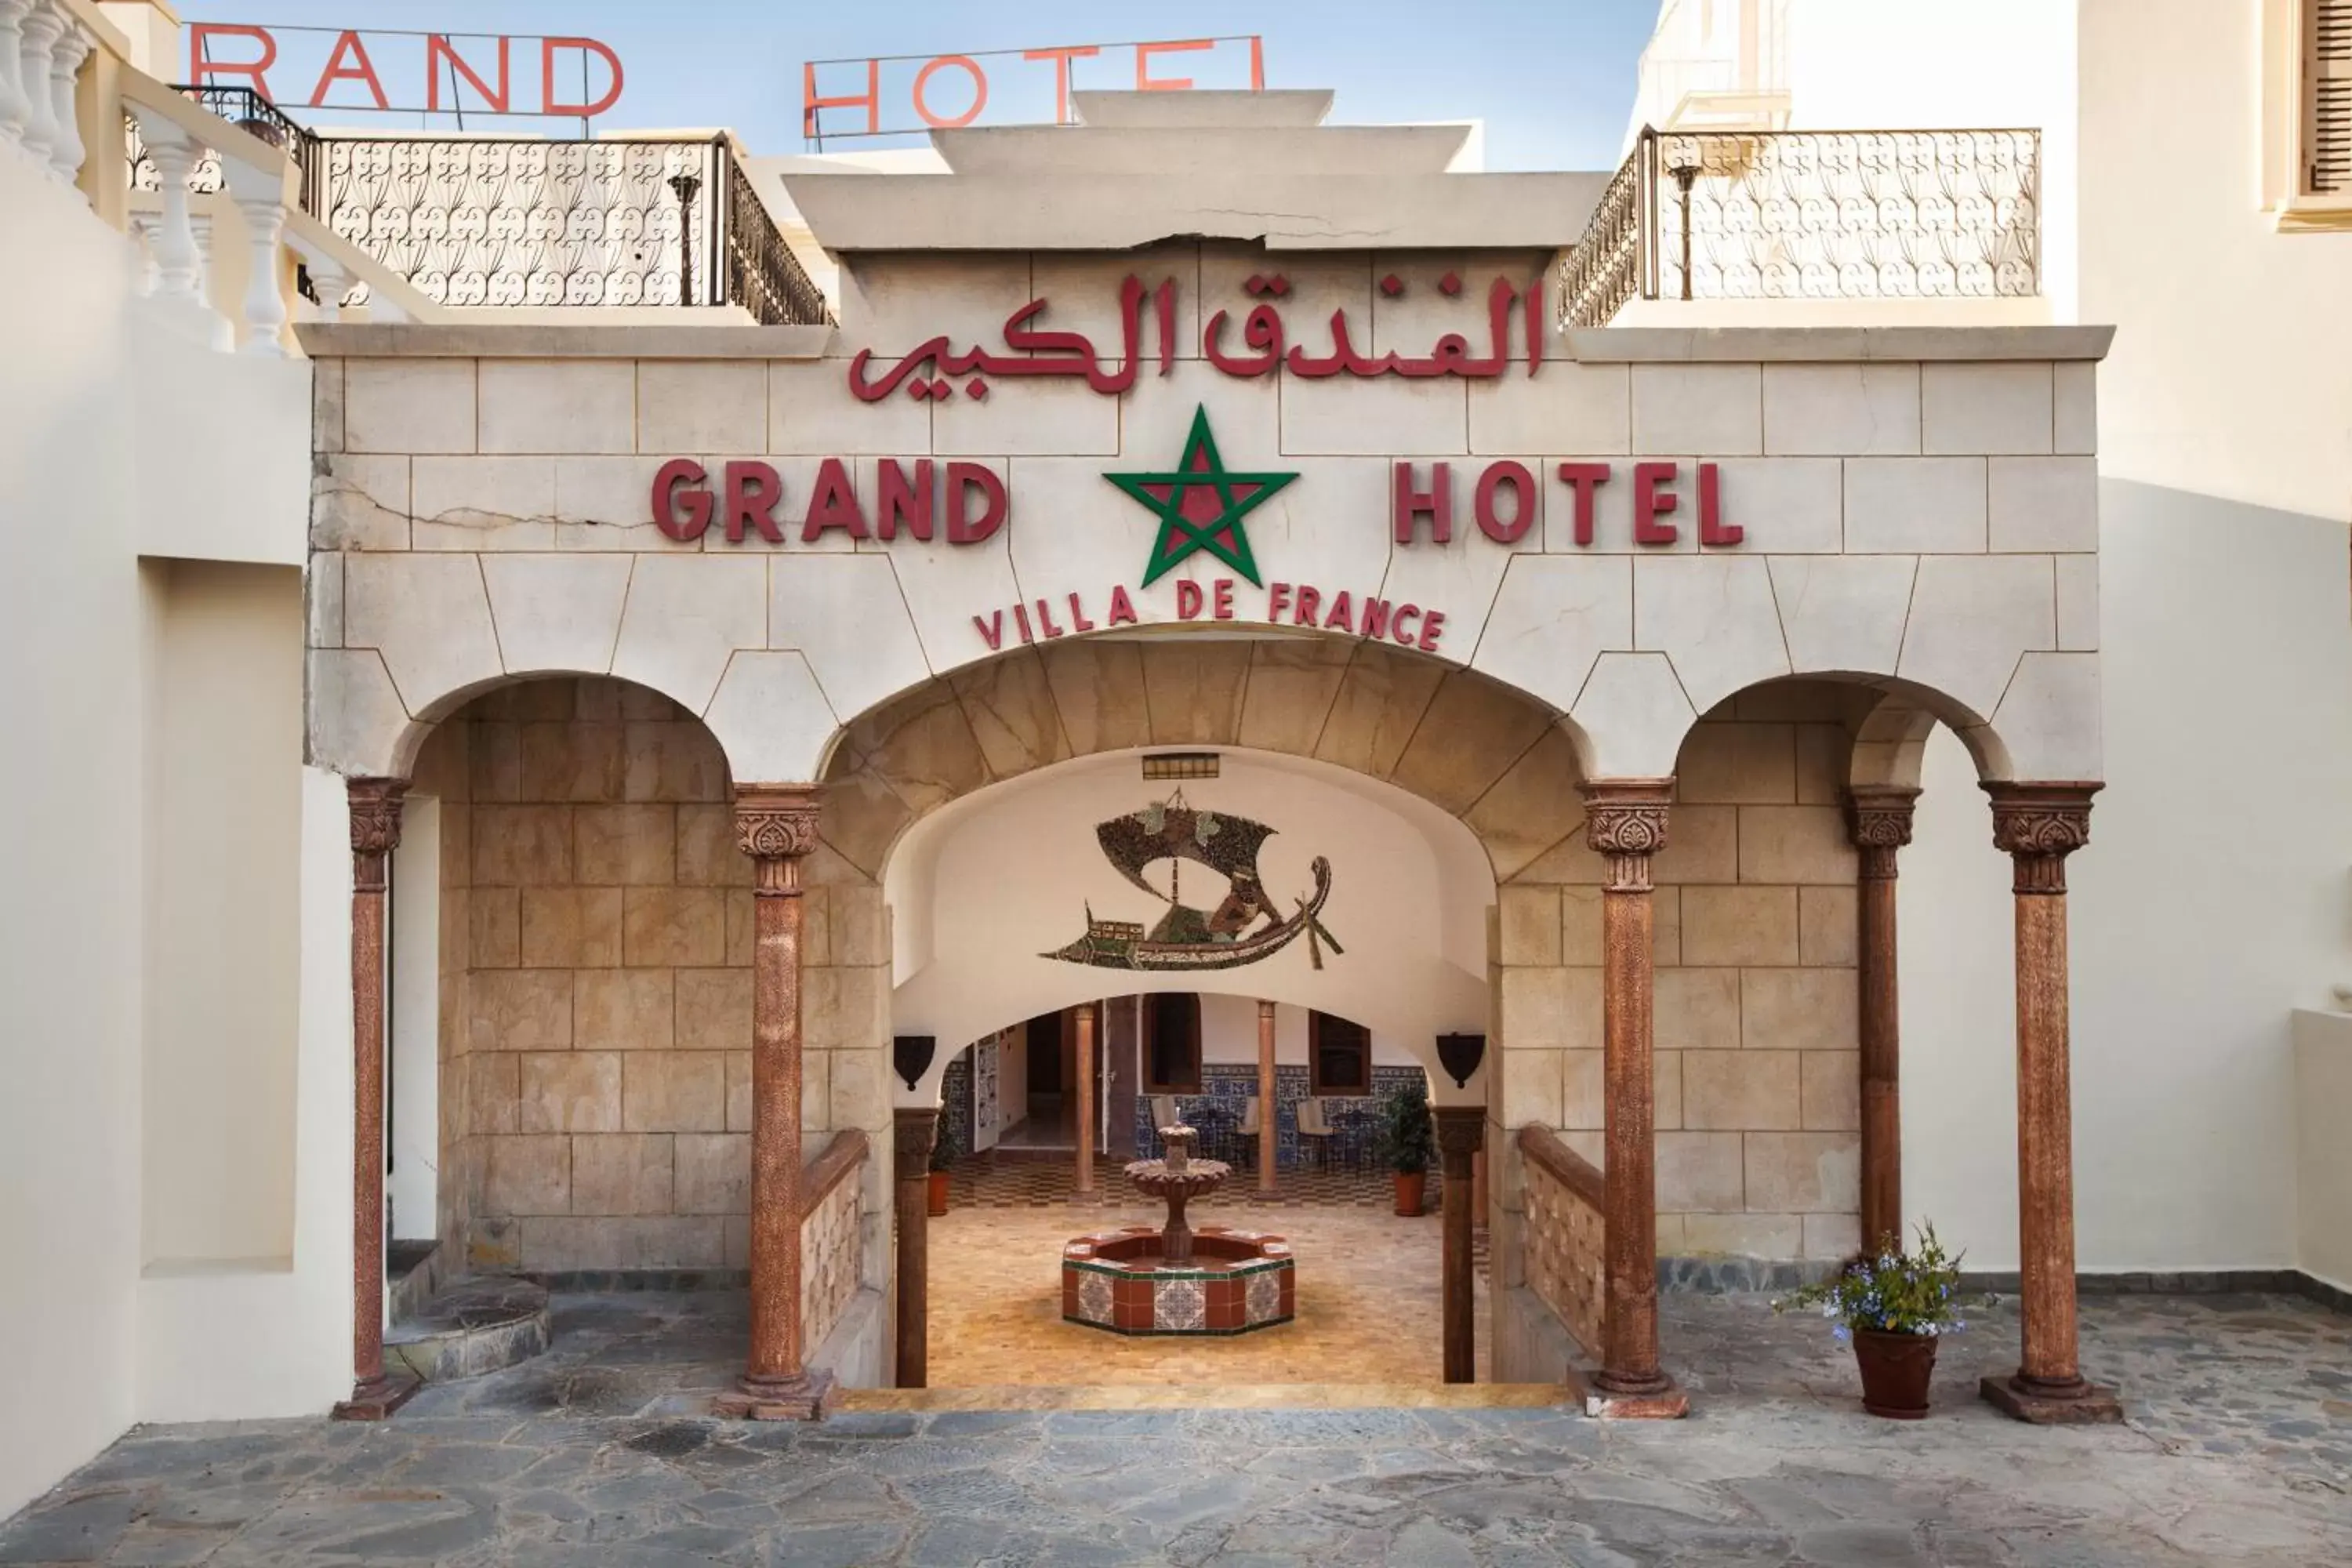 Facade/Entrance in Grand Hotel Villa de France